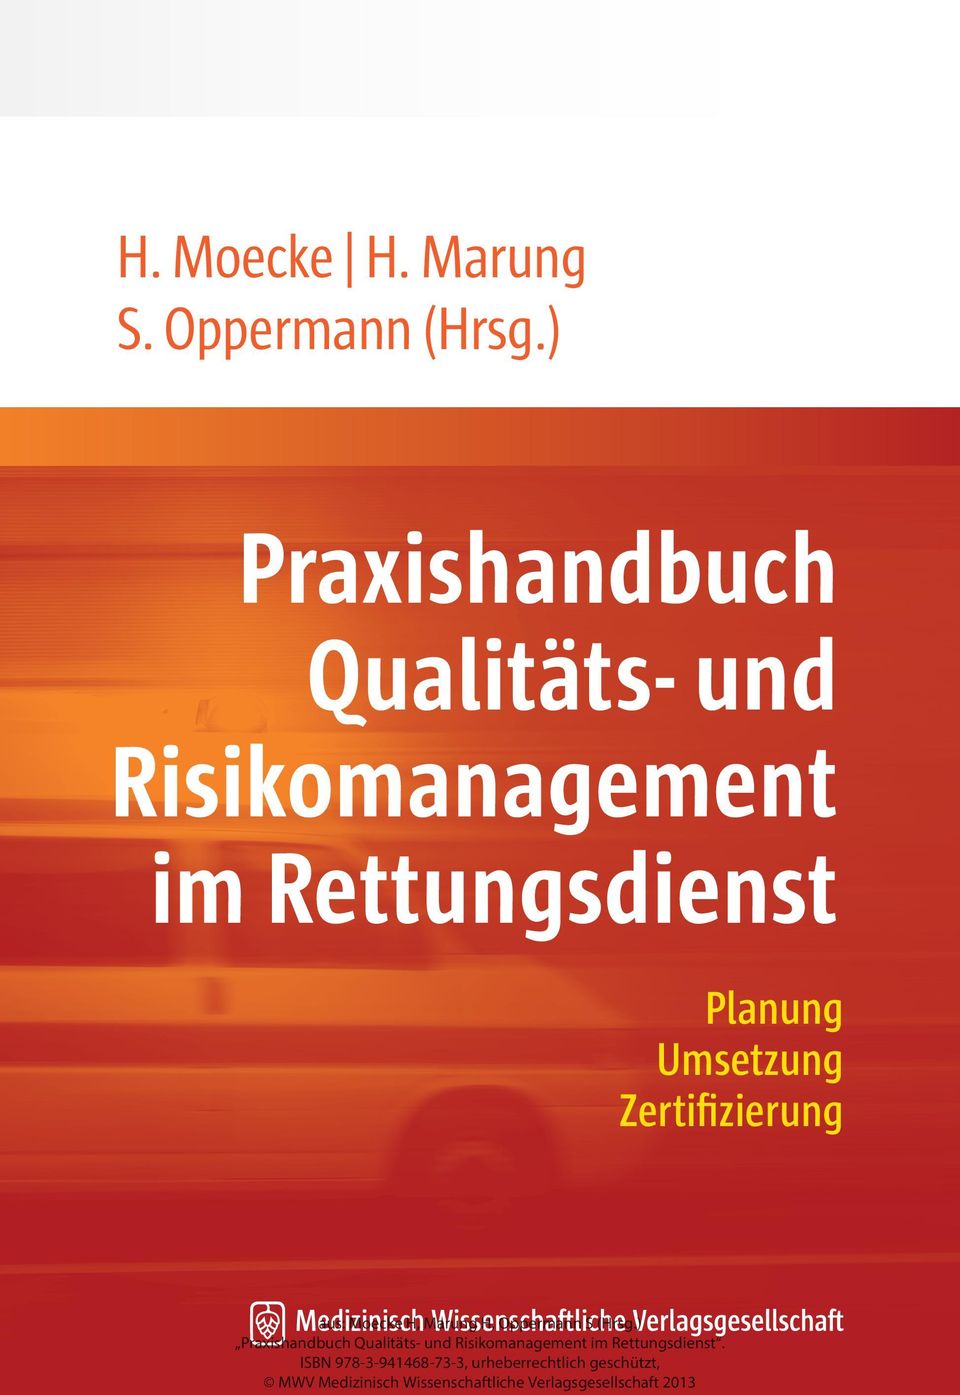 ) Praxishandbuch Qualitäts- und